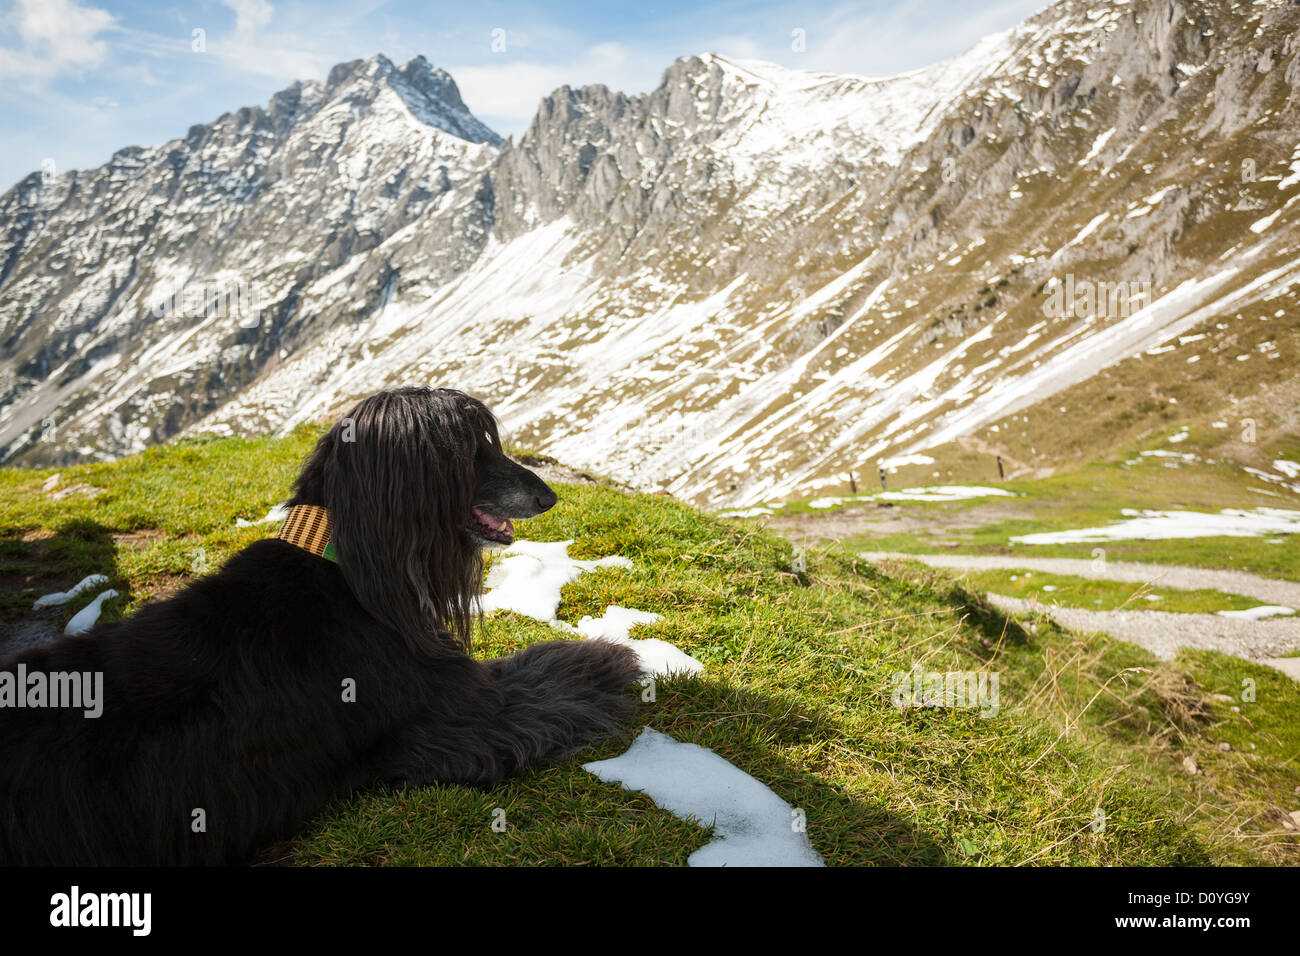 Black Afgano ruht auf dem Rasen im Schatten hoch oben in den Alpen in der Nähe von Innsbruck, leichter Schneefall auf den felsigen Gipfeln in der Sonne. Stockfoto